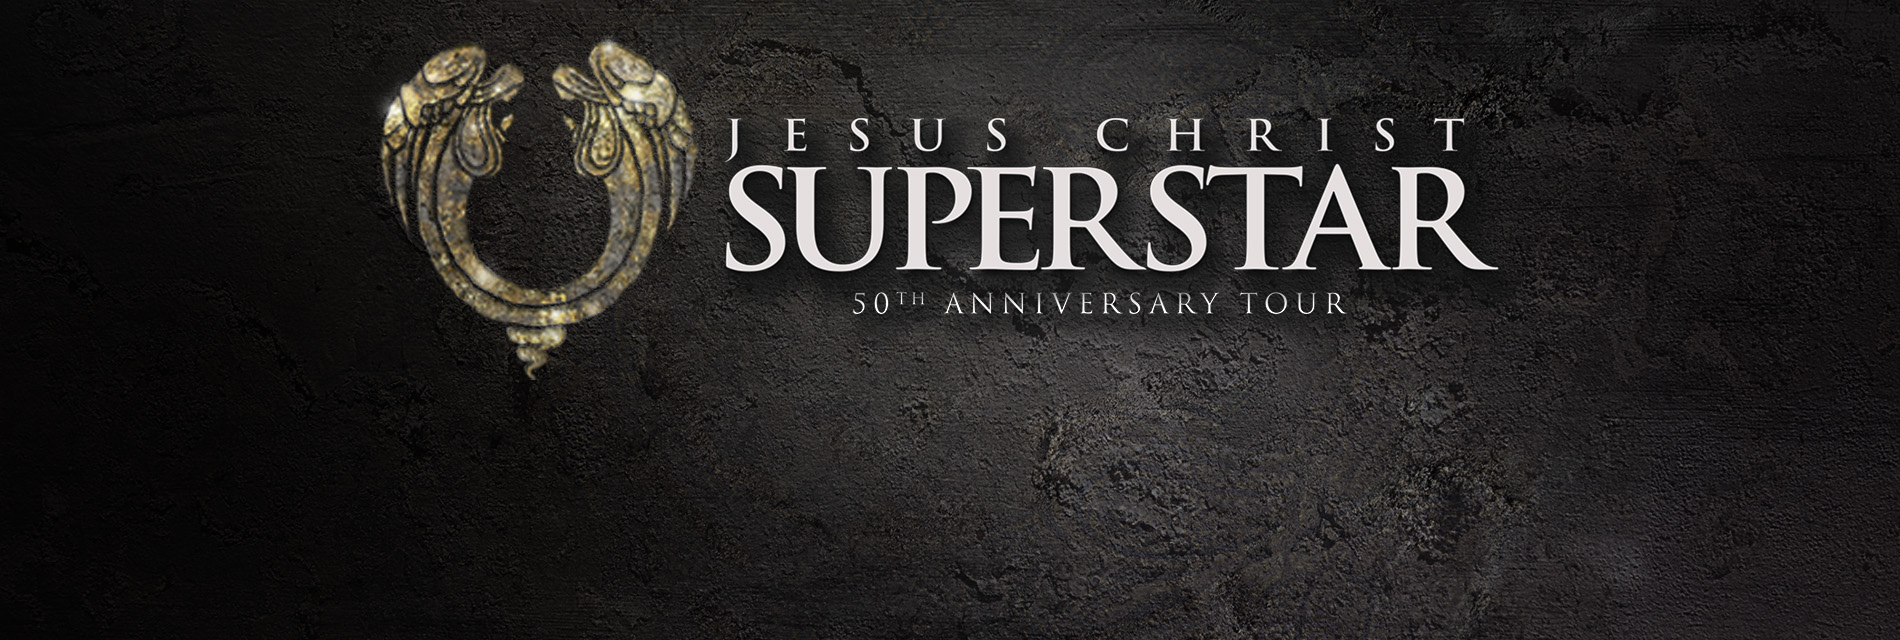 Slide 2: Jesus Christ Superstar